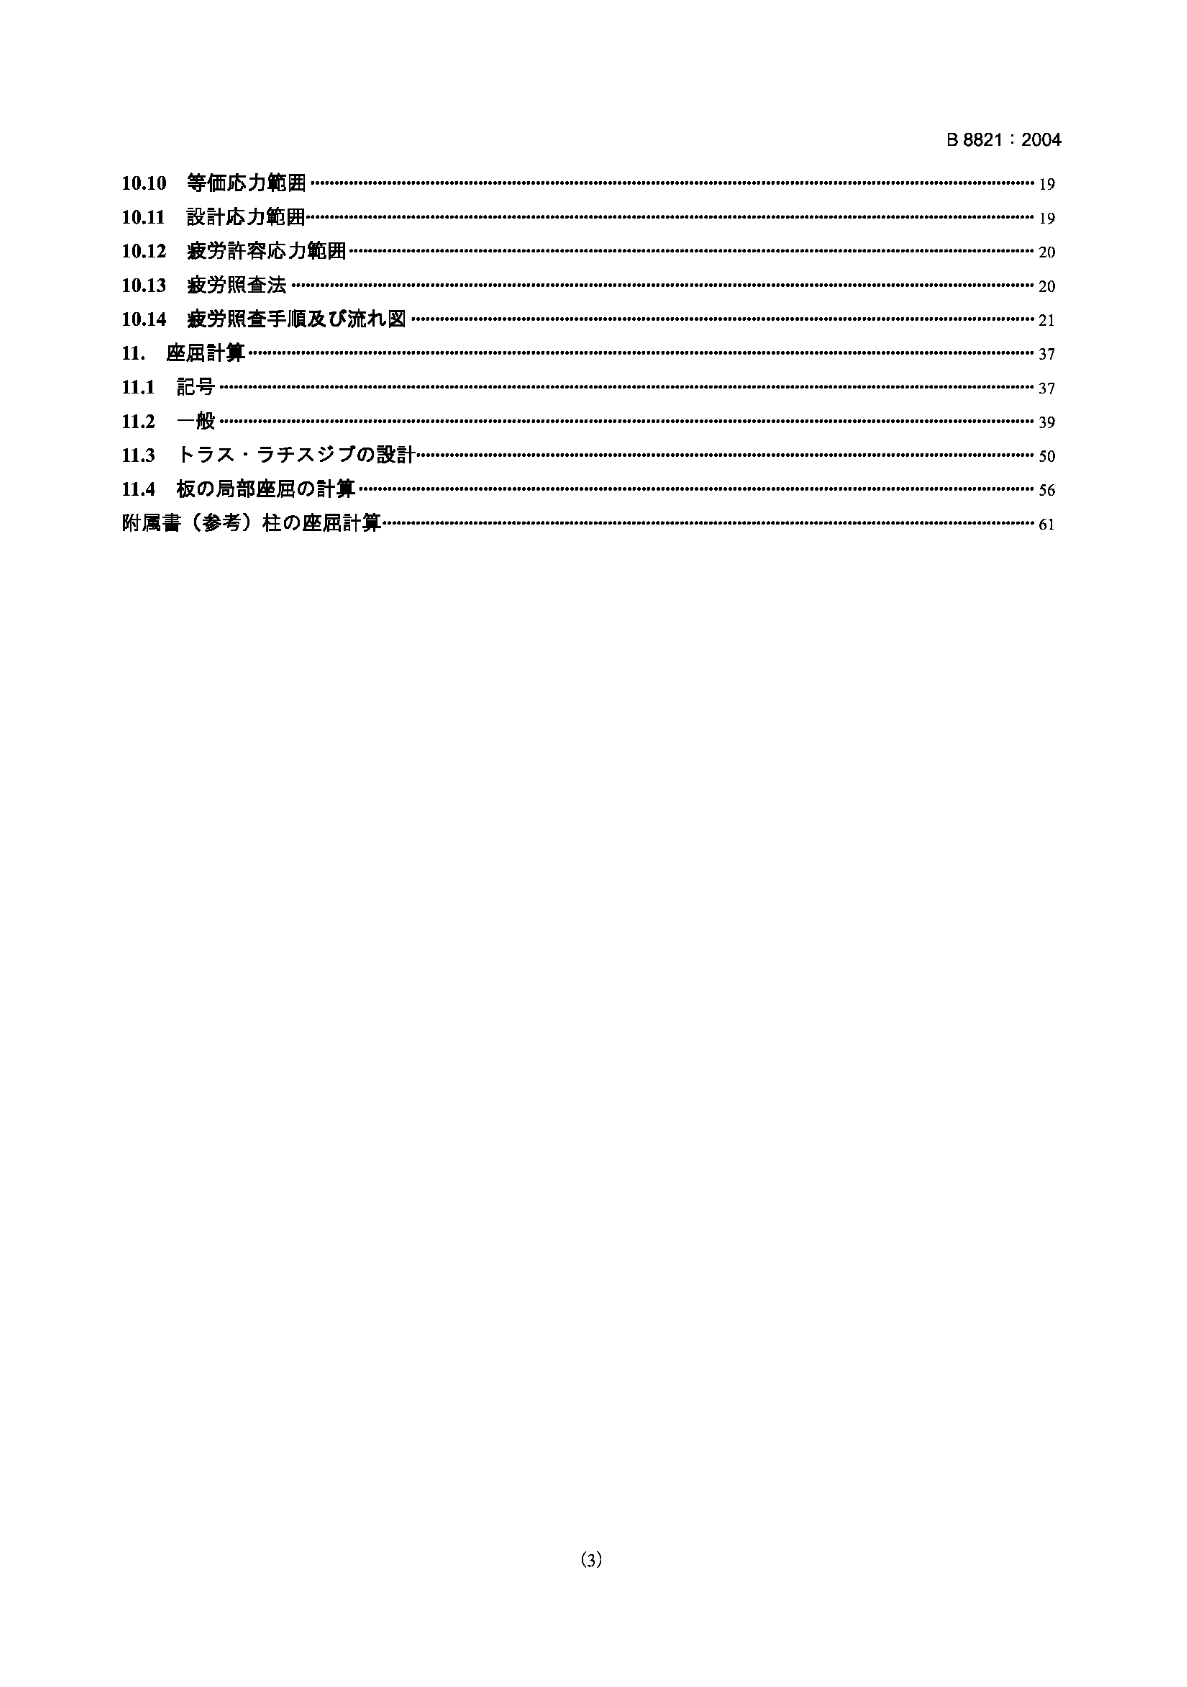 JIS B 8821-2004 起重机钢结构规范(日语)-图一